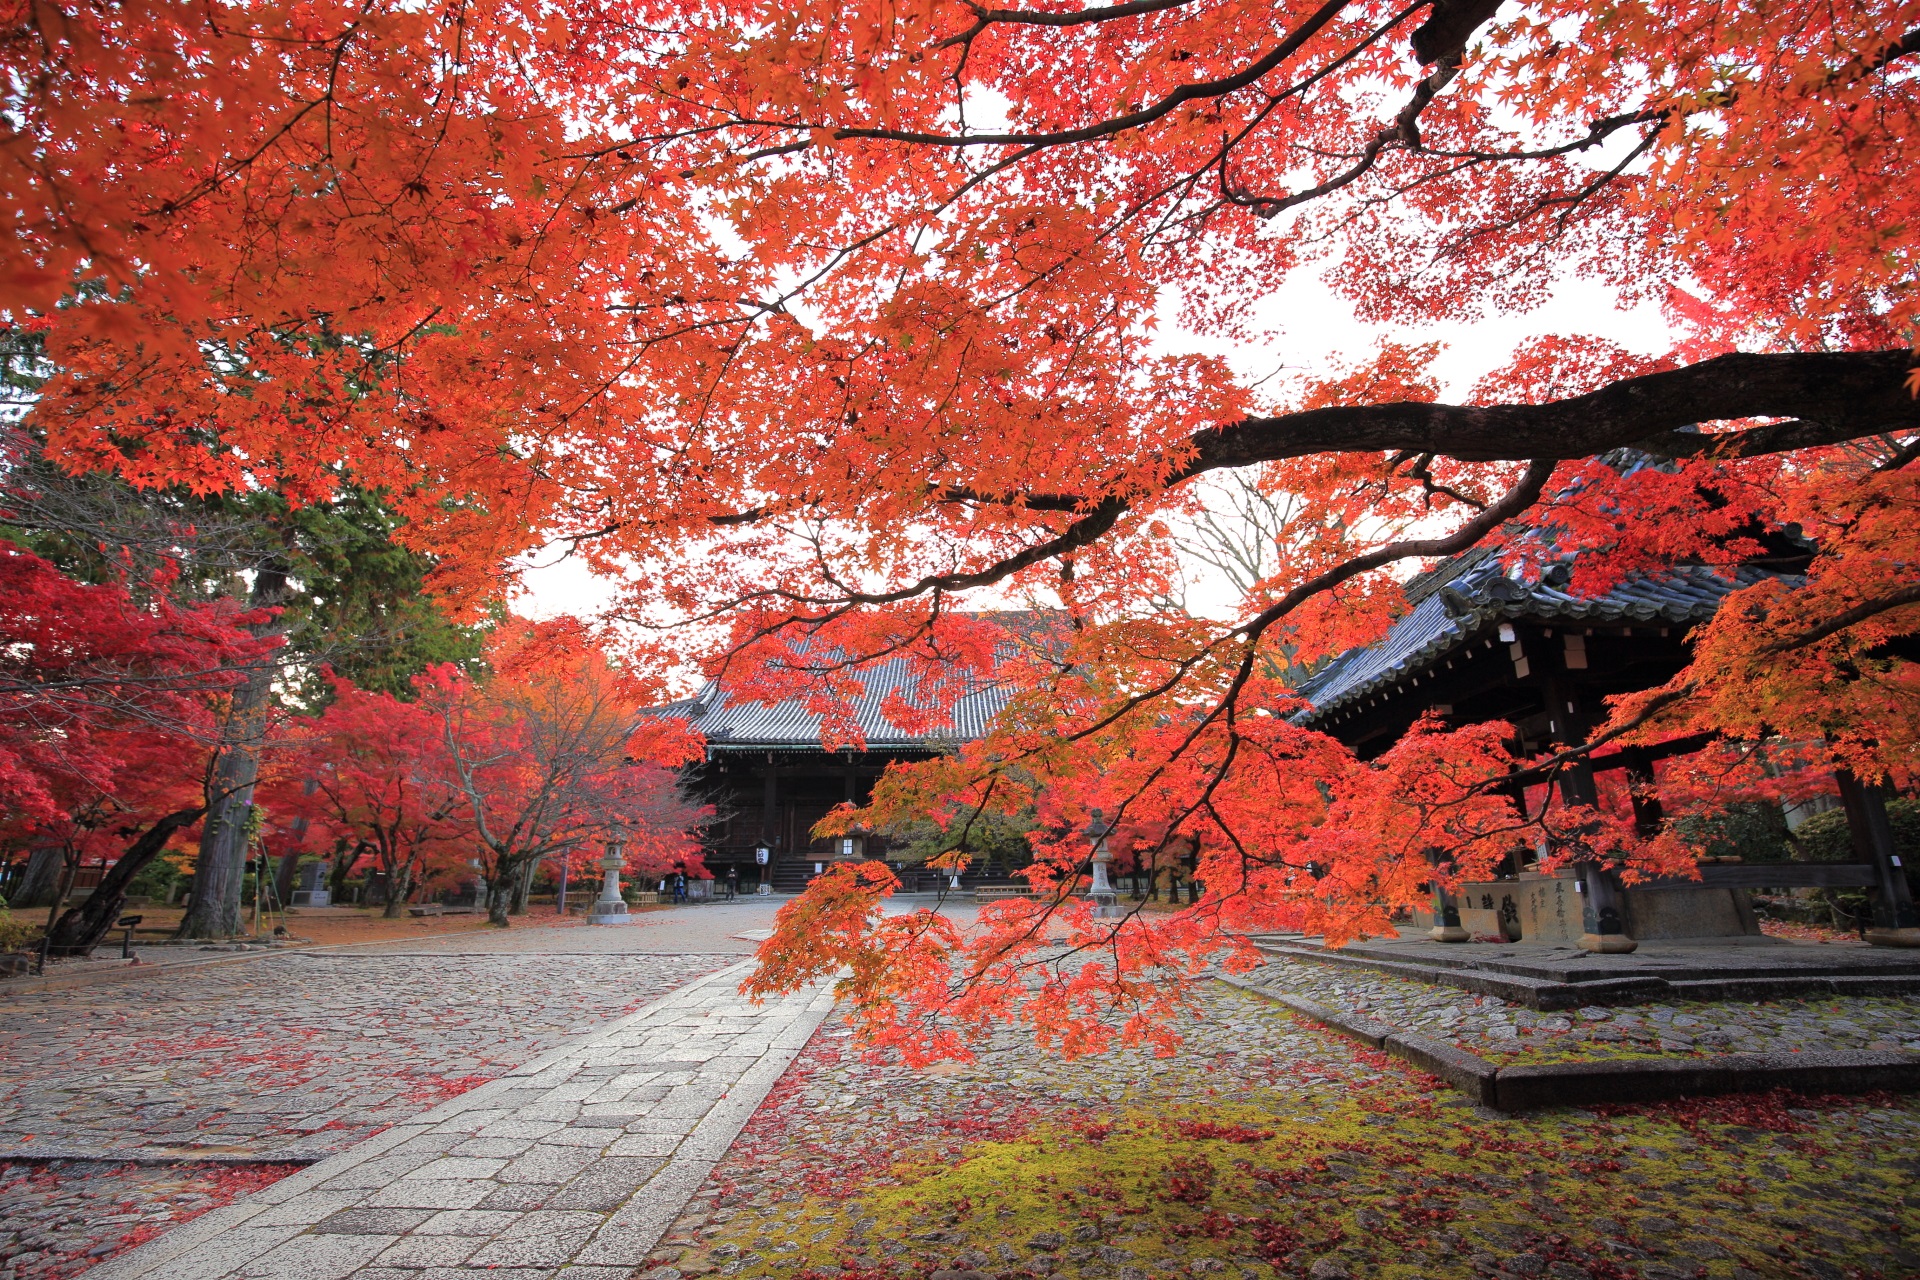 三重塔付近から眺めた本堂と紅葉の淡い秋色の空間